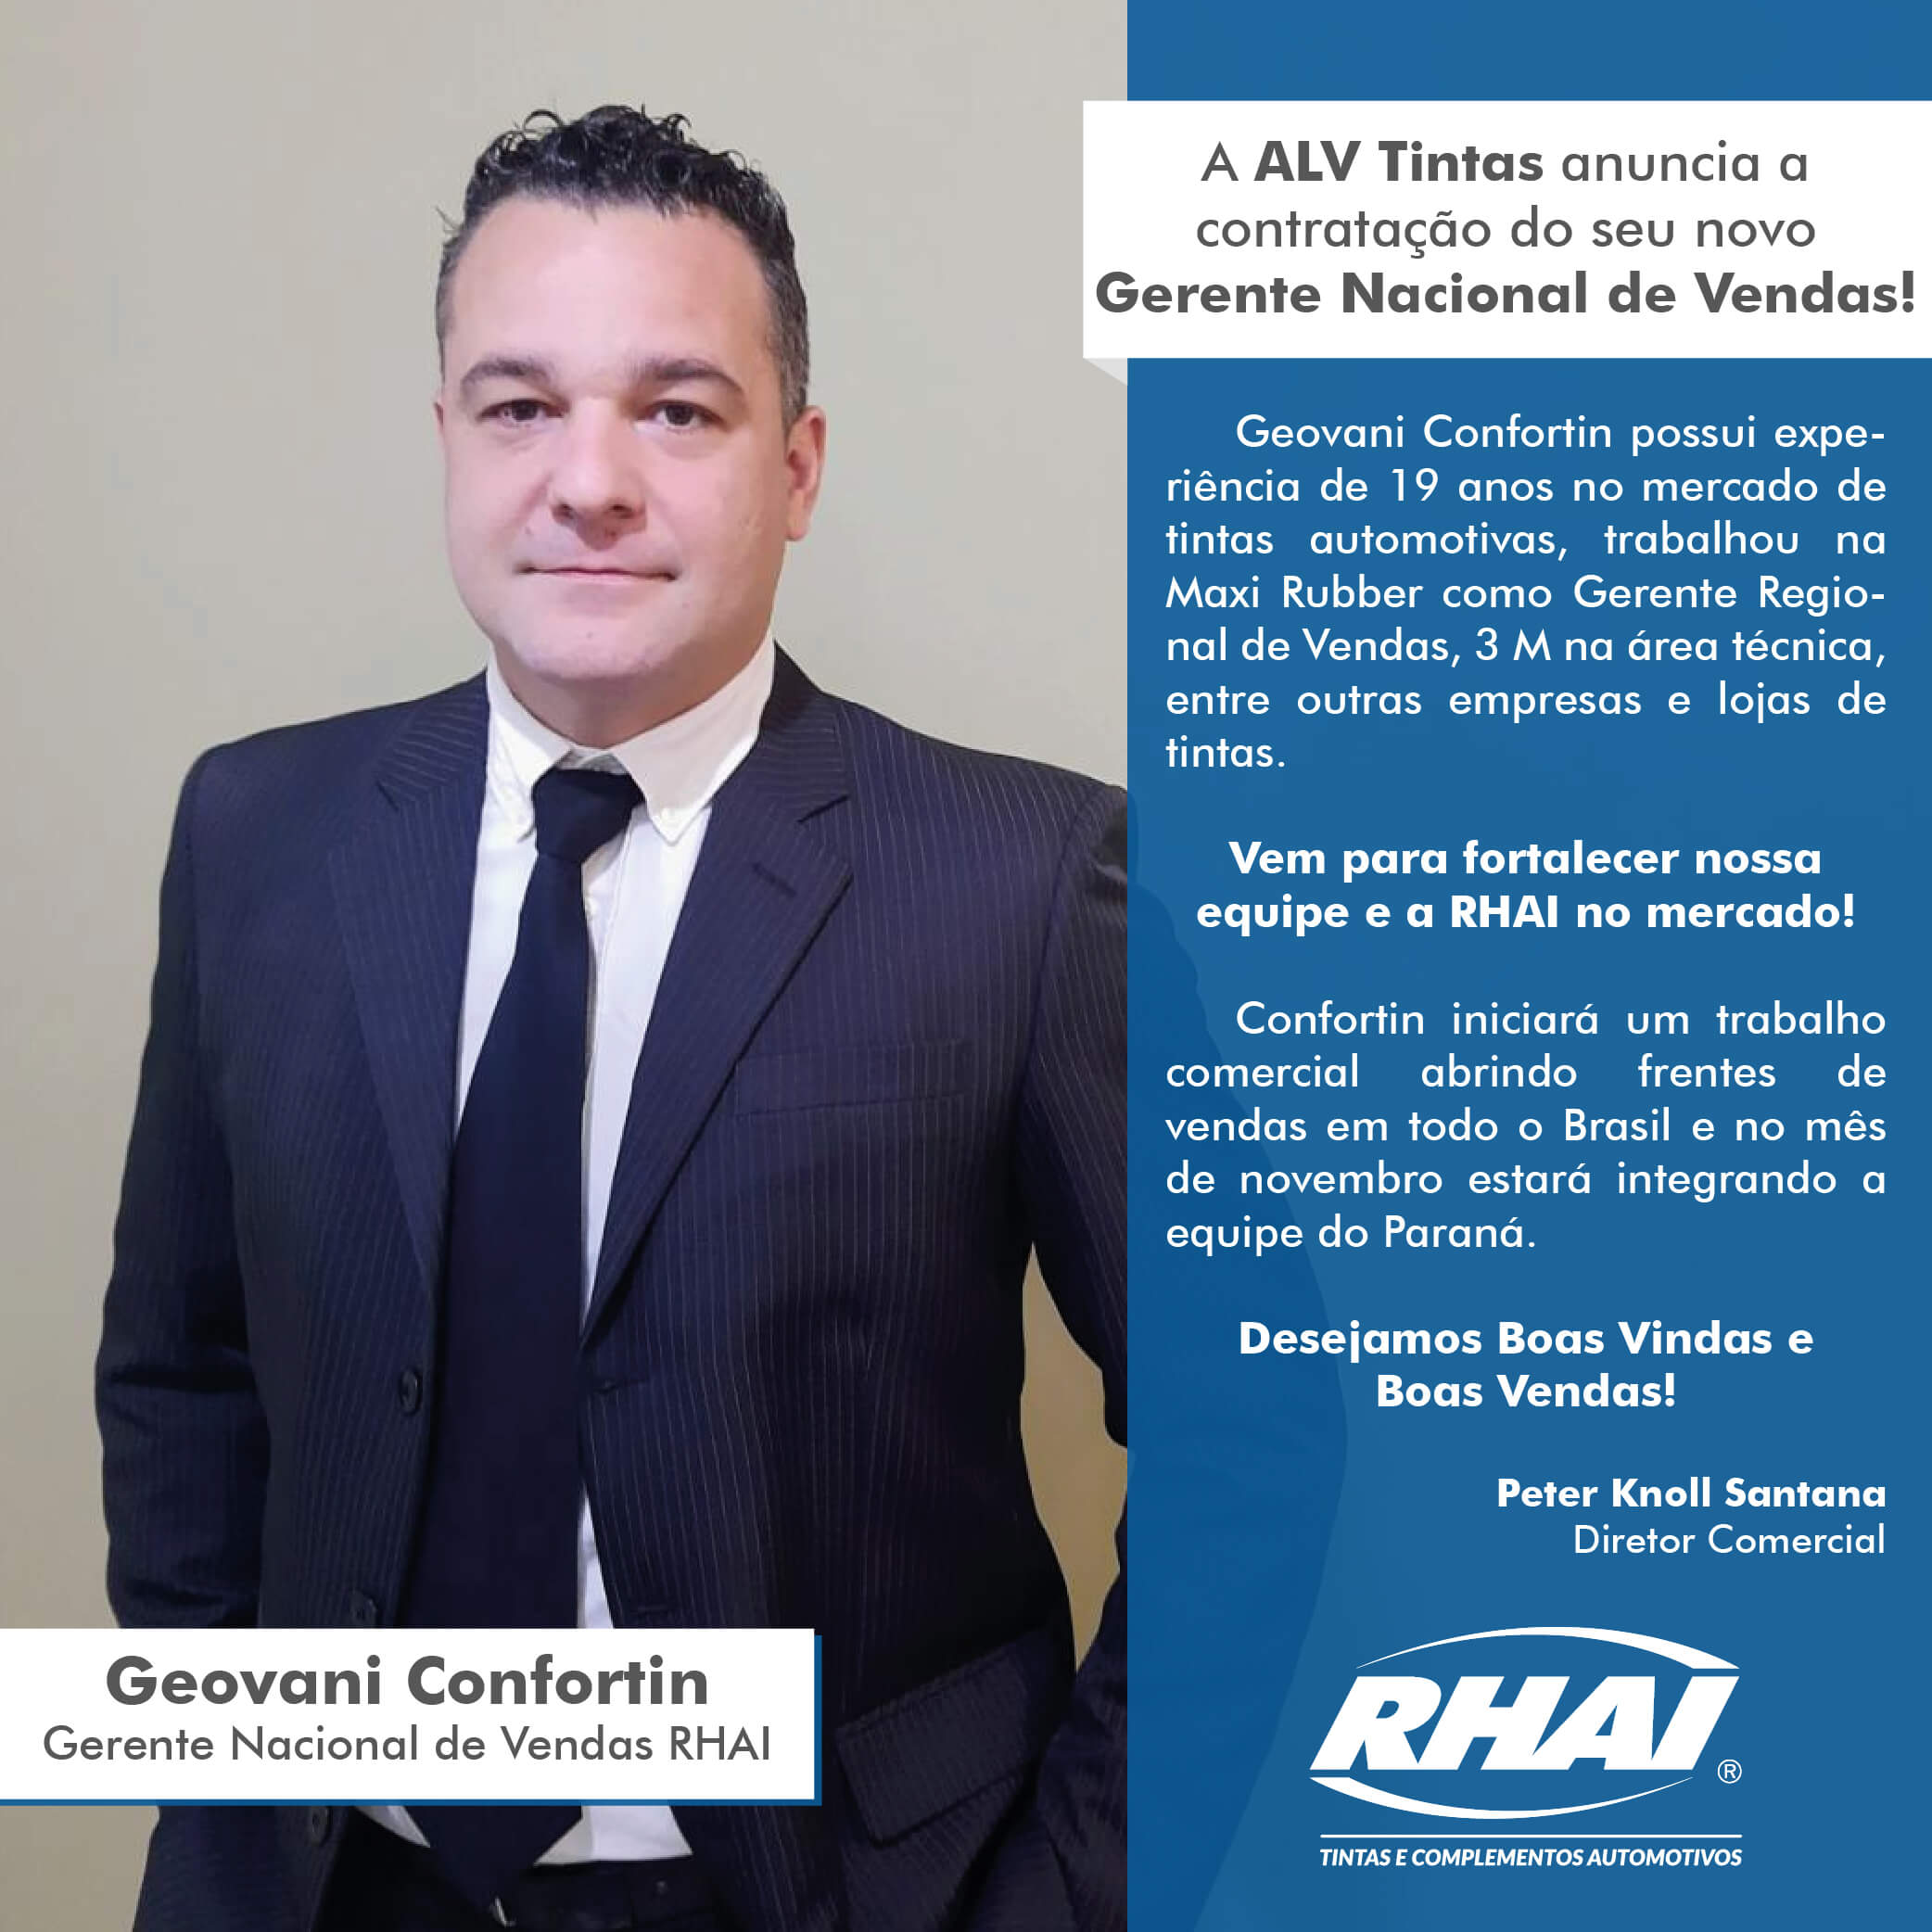 A ALV Tintas anuncia a contratação do seu novo Gerente Nacional de Vendas! 